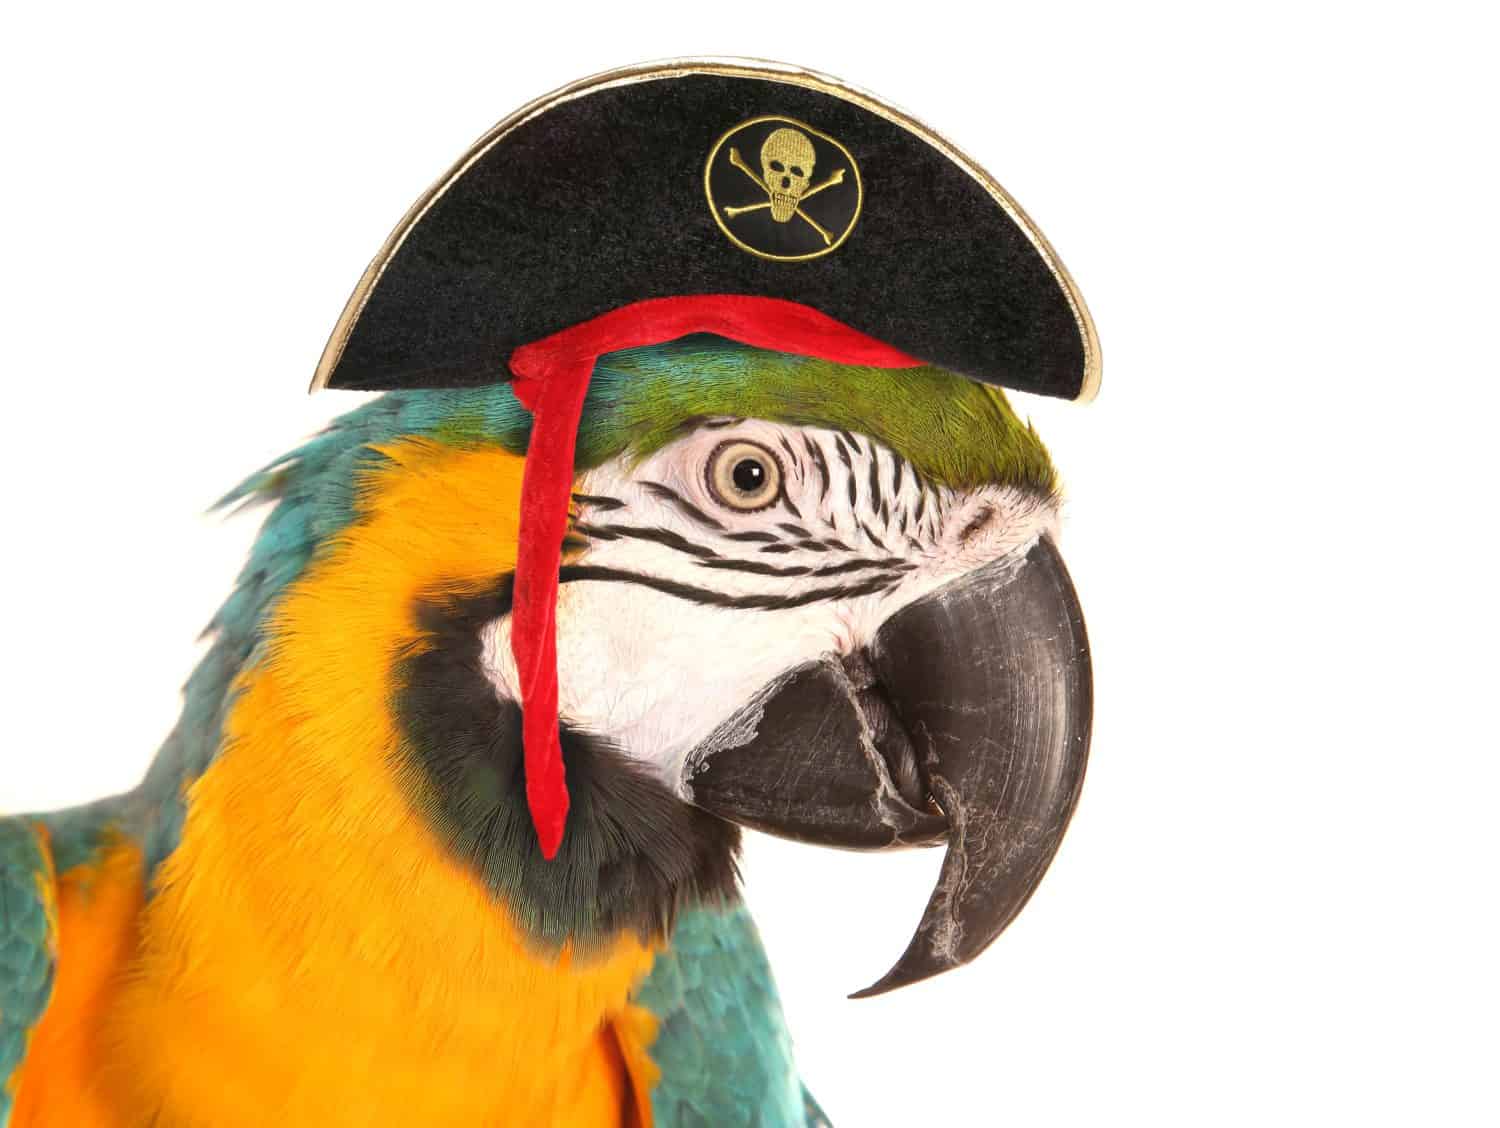 ritaglio dello studio del pappagallo dell'ara pirata